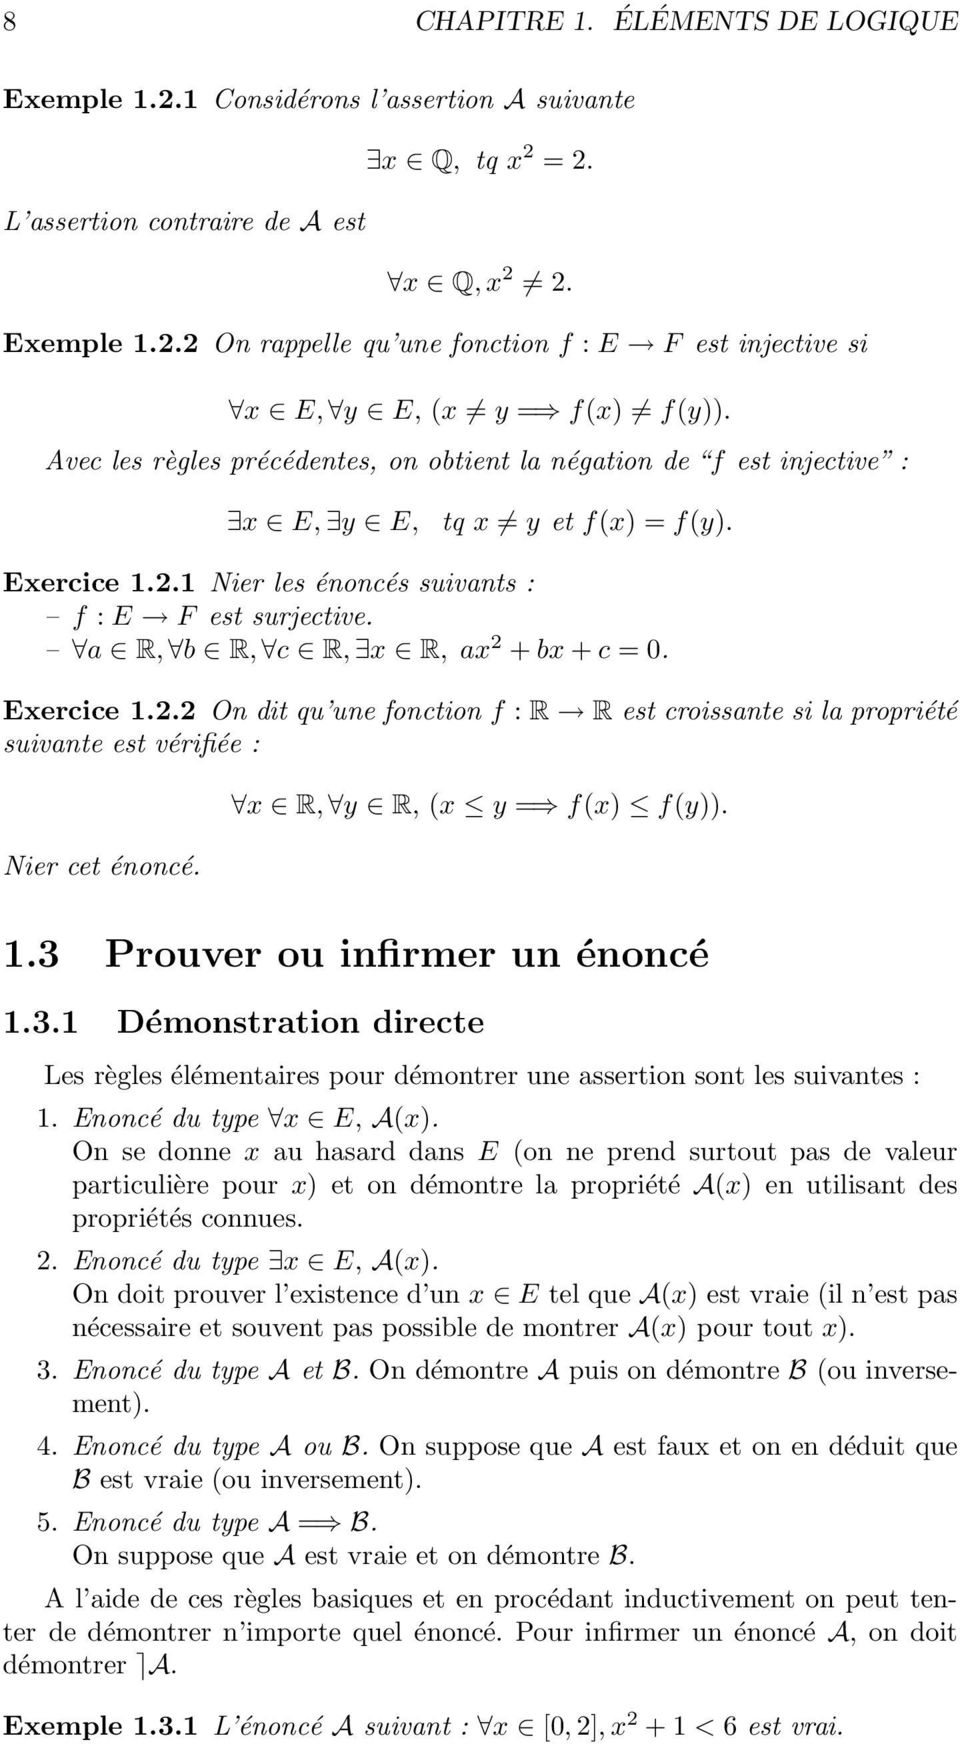 R, b R, c R, x R, x 2 + bx + c = 0. Exercice 1.2.2 On dit qu une fonction f : R R est croissnte si l propriété suivnte est vérifiée : Nier cet énoncé. x R, y R, (x y = f(x) f(y)). 1.3 Prouver ou infirmer un énoncé 1.